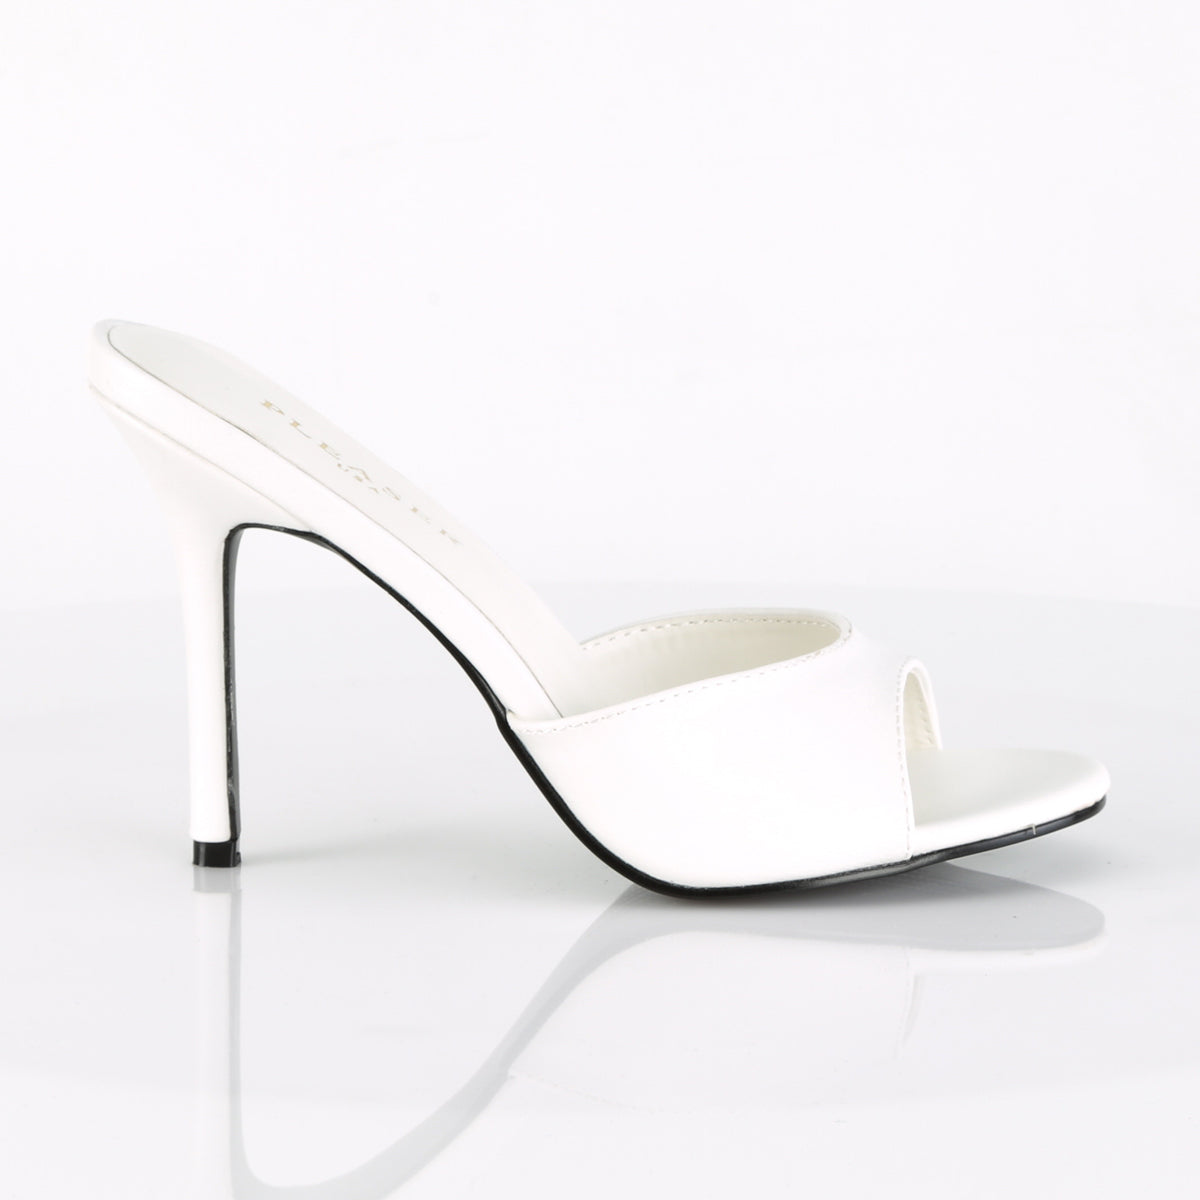 CLASSIQUE-01 White Peep Toe High Heel